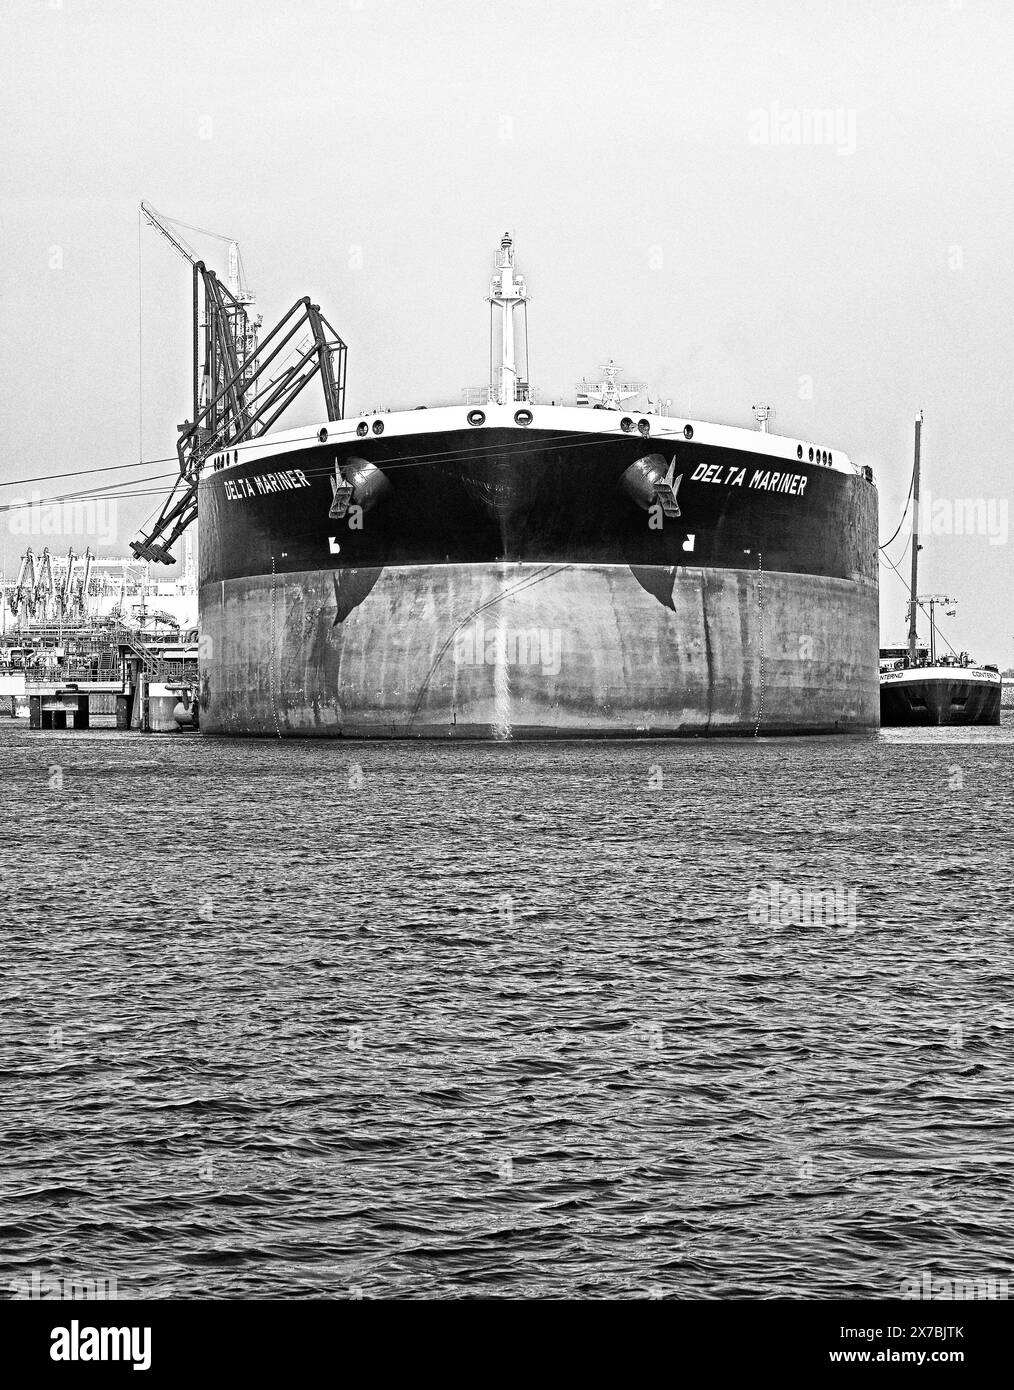 port de rotterdam (maasvlakte), pays-bas - 2024-05-10 : pétrolier de pétrole brut suezmax delta mariner (omi# 9550682) (2013 / 157 838 dwt) déchargeant du cr Banque D'Images